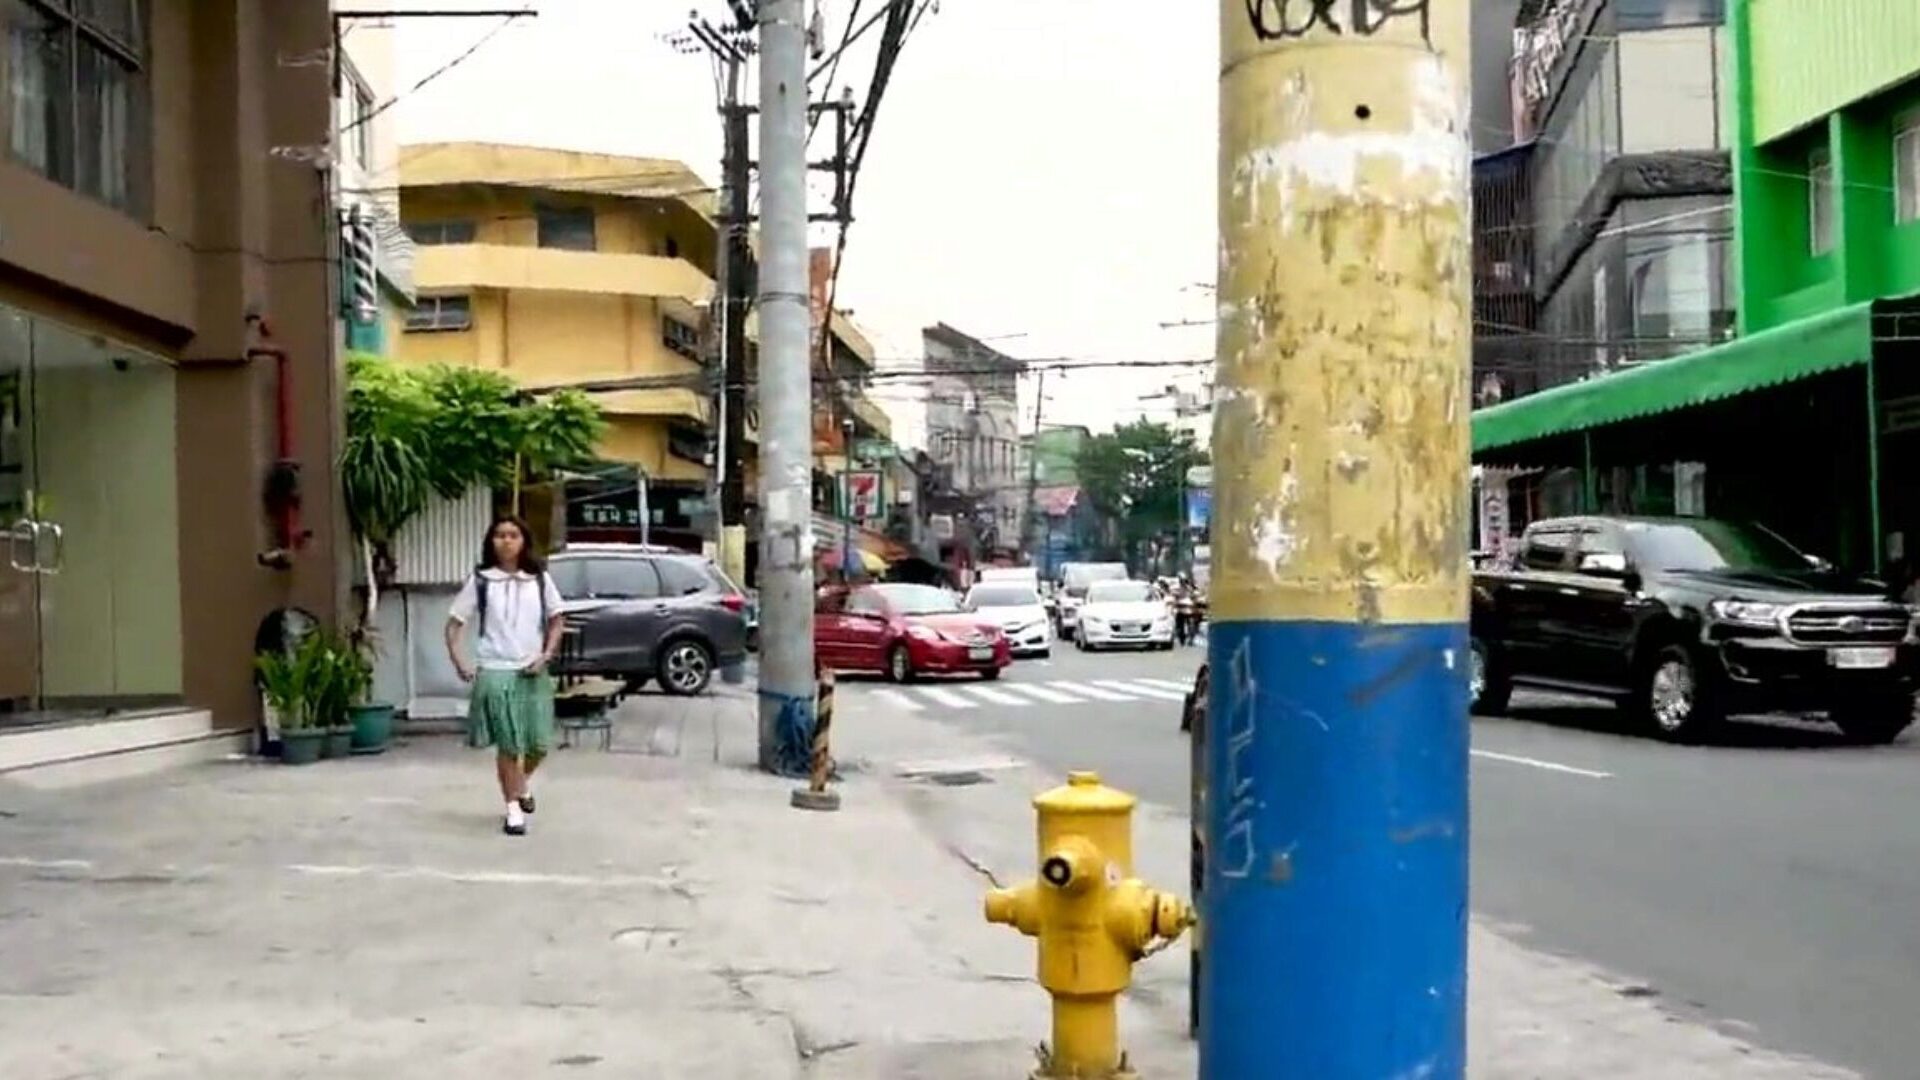 un étalon blanc imprègne une adolescente philippine, porno hd 59: montre xhamster un étalon blanc imprègne une scène de film d'adolescents philippins sur xhamster, le meilleur site de tubes d'amour hd avec des tonnes d'adolescents gratuits pour des films porno gratuits pour adolescents et creampie fuq